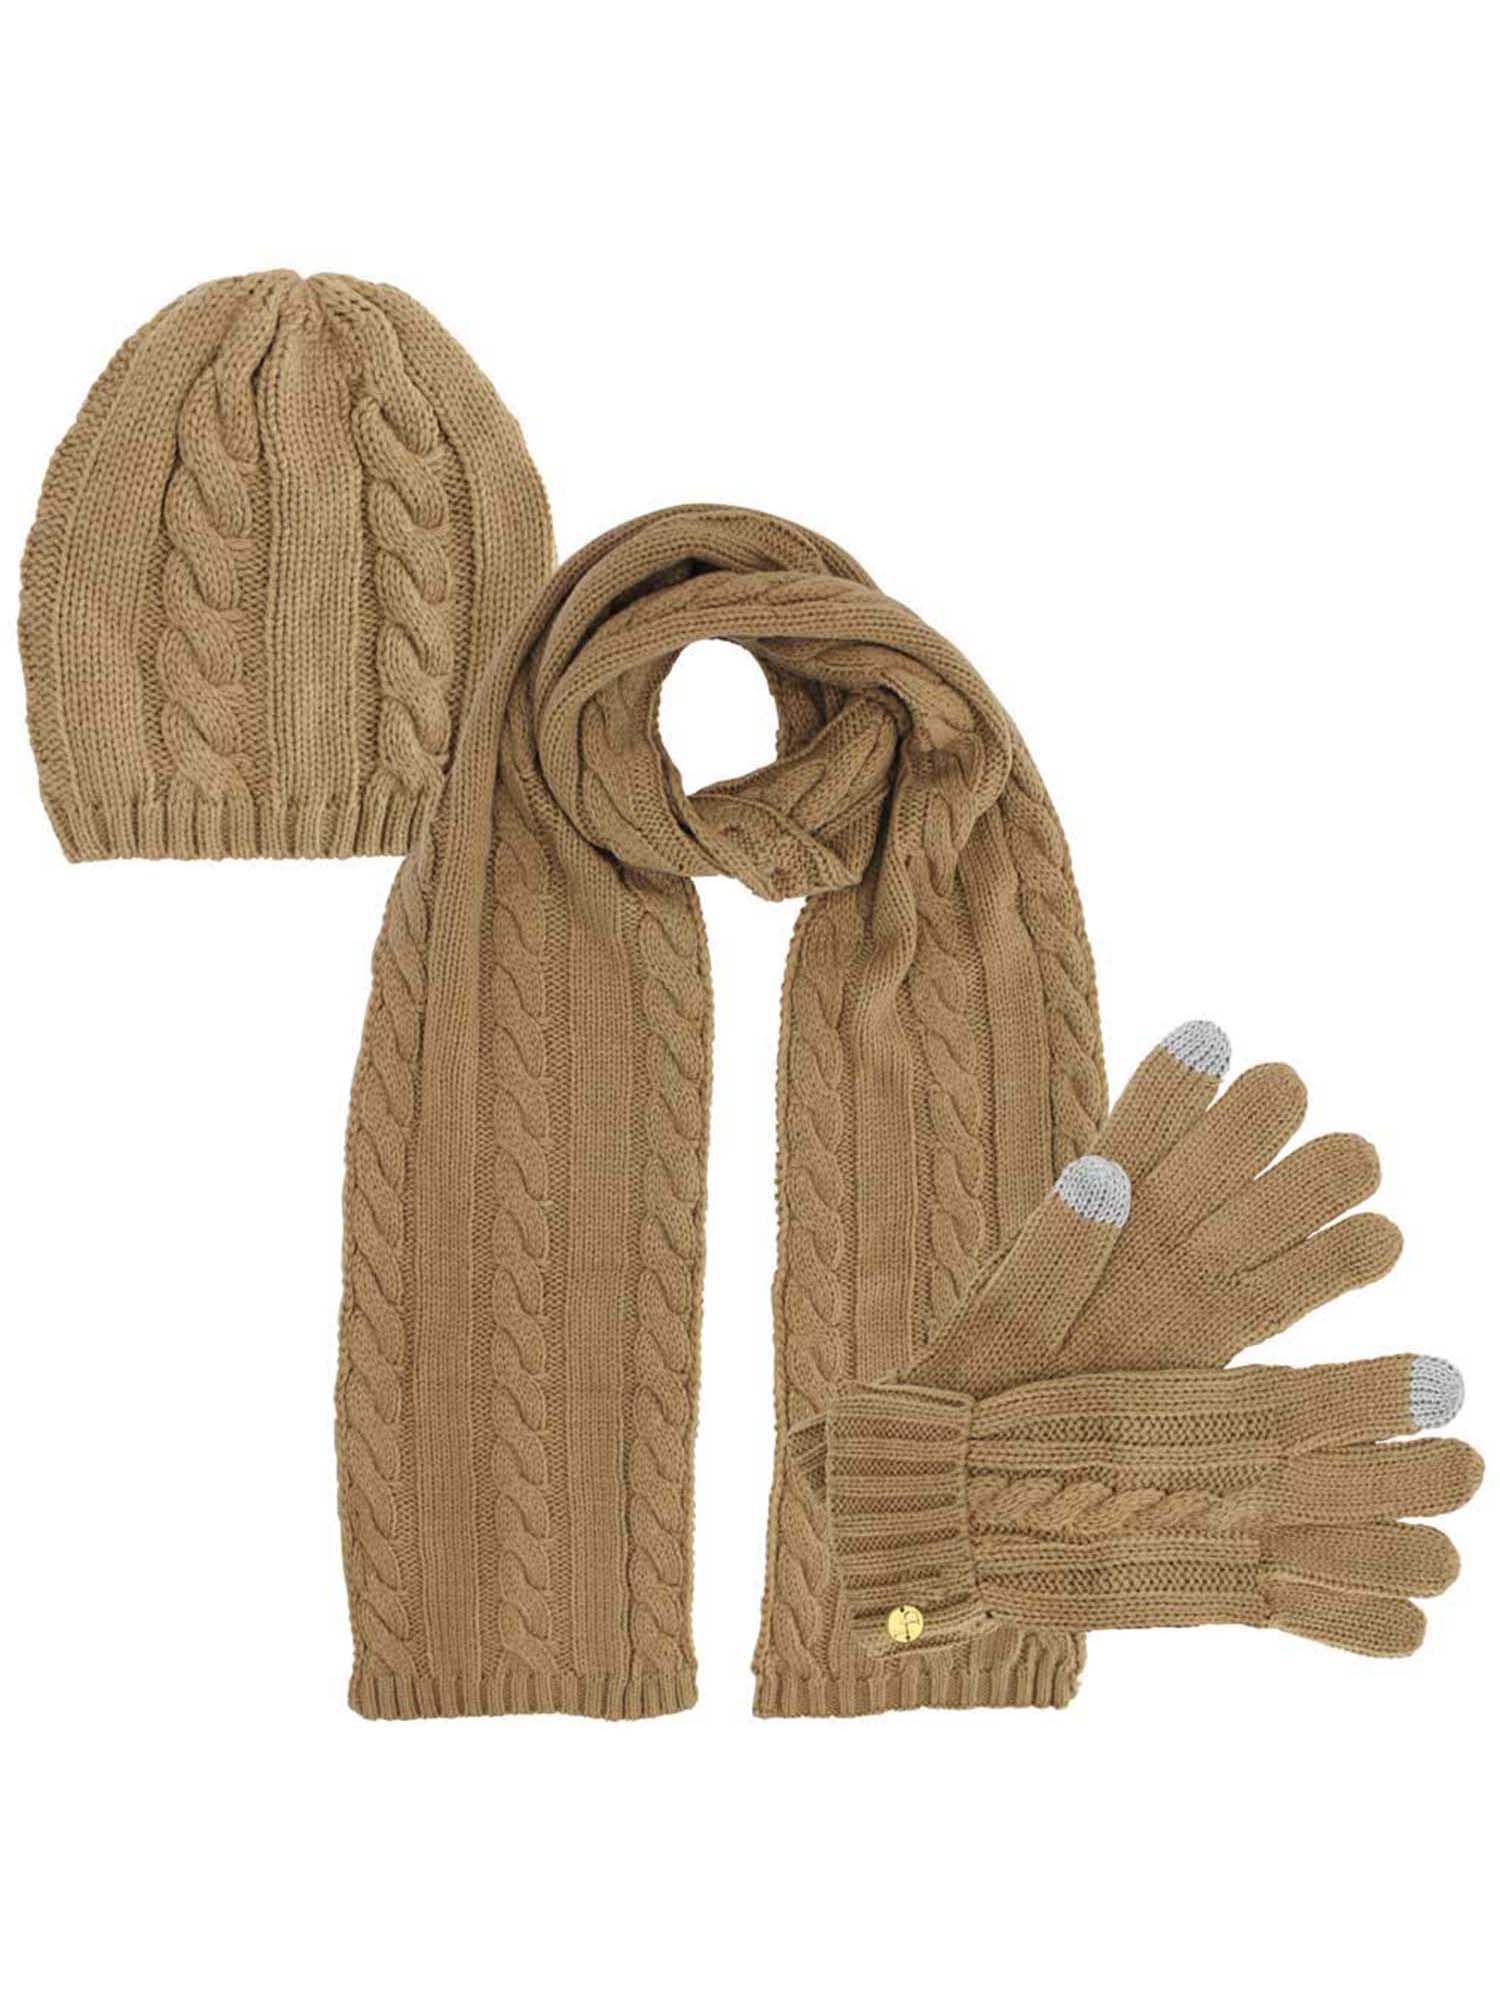 Beige 3 Piece Beanie Hat Texting Gloves & Matching Scarf Set - Walmart.com | Walmart (US)